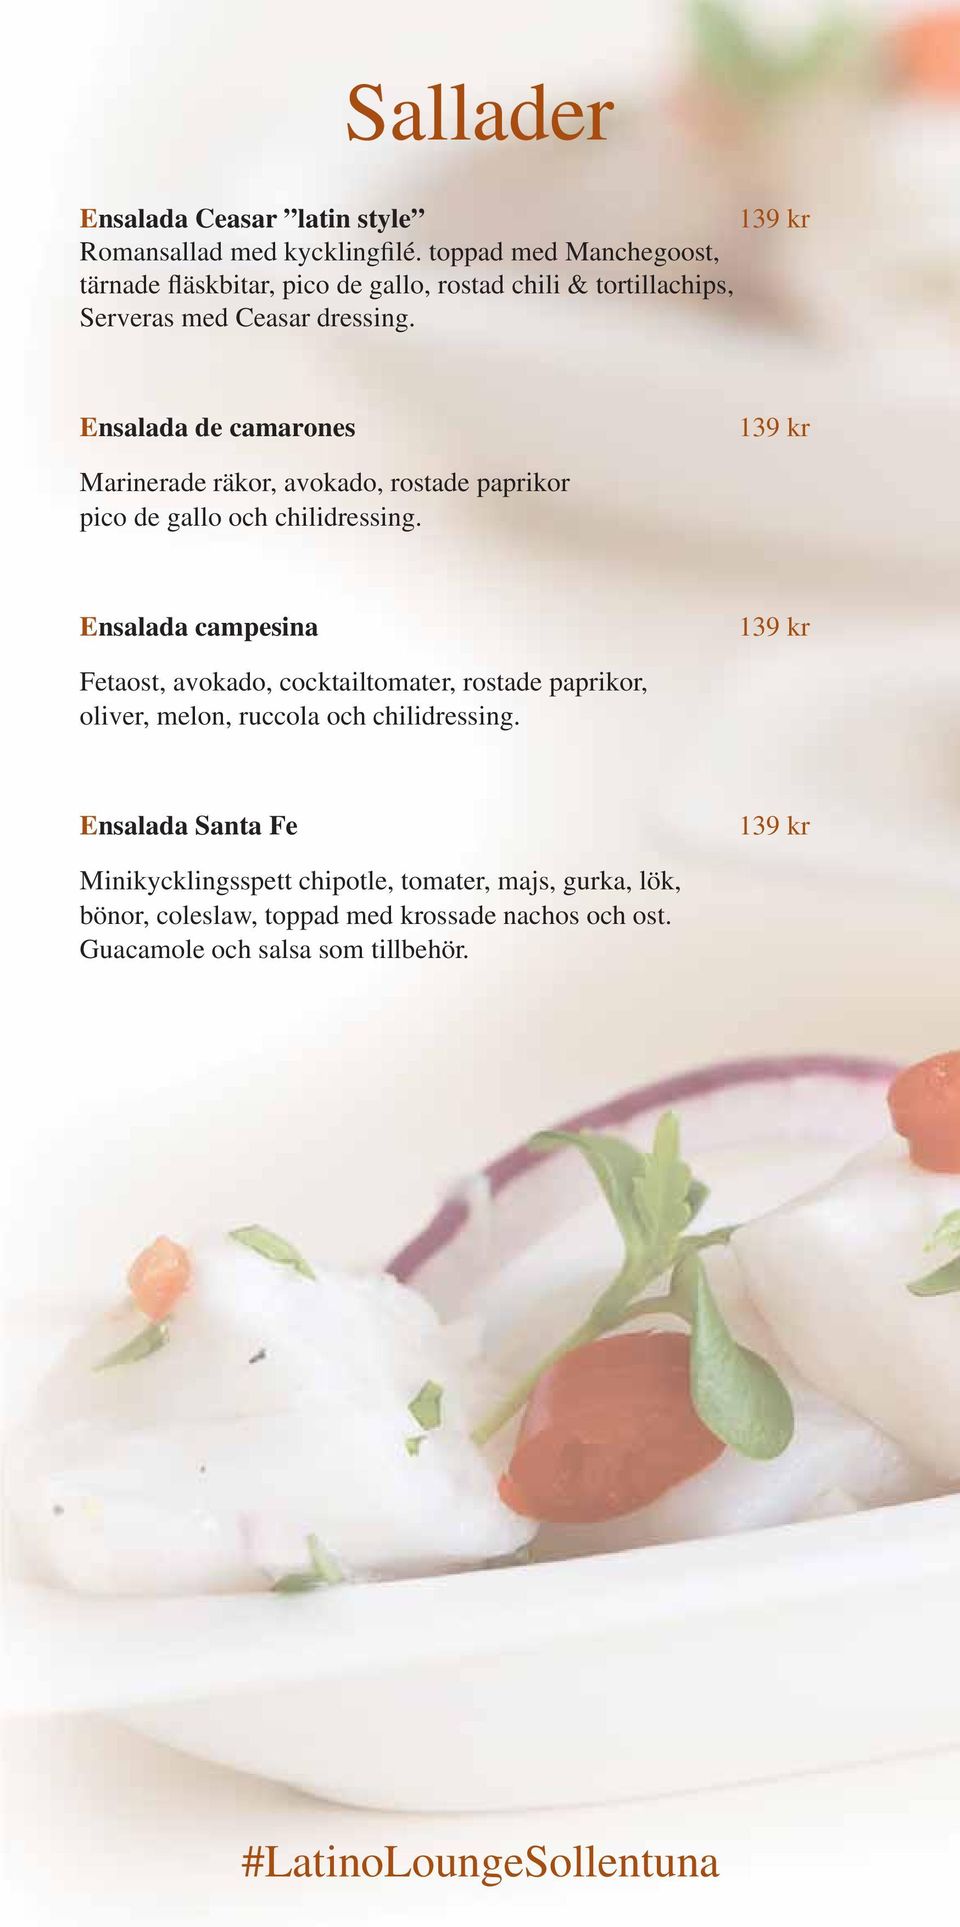 Ensalada de camarones 139 kr Marinerade räkor, avokado, rostade paprikor pico de gallo och chilidressing.